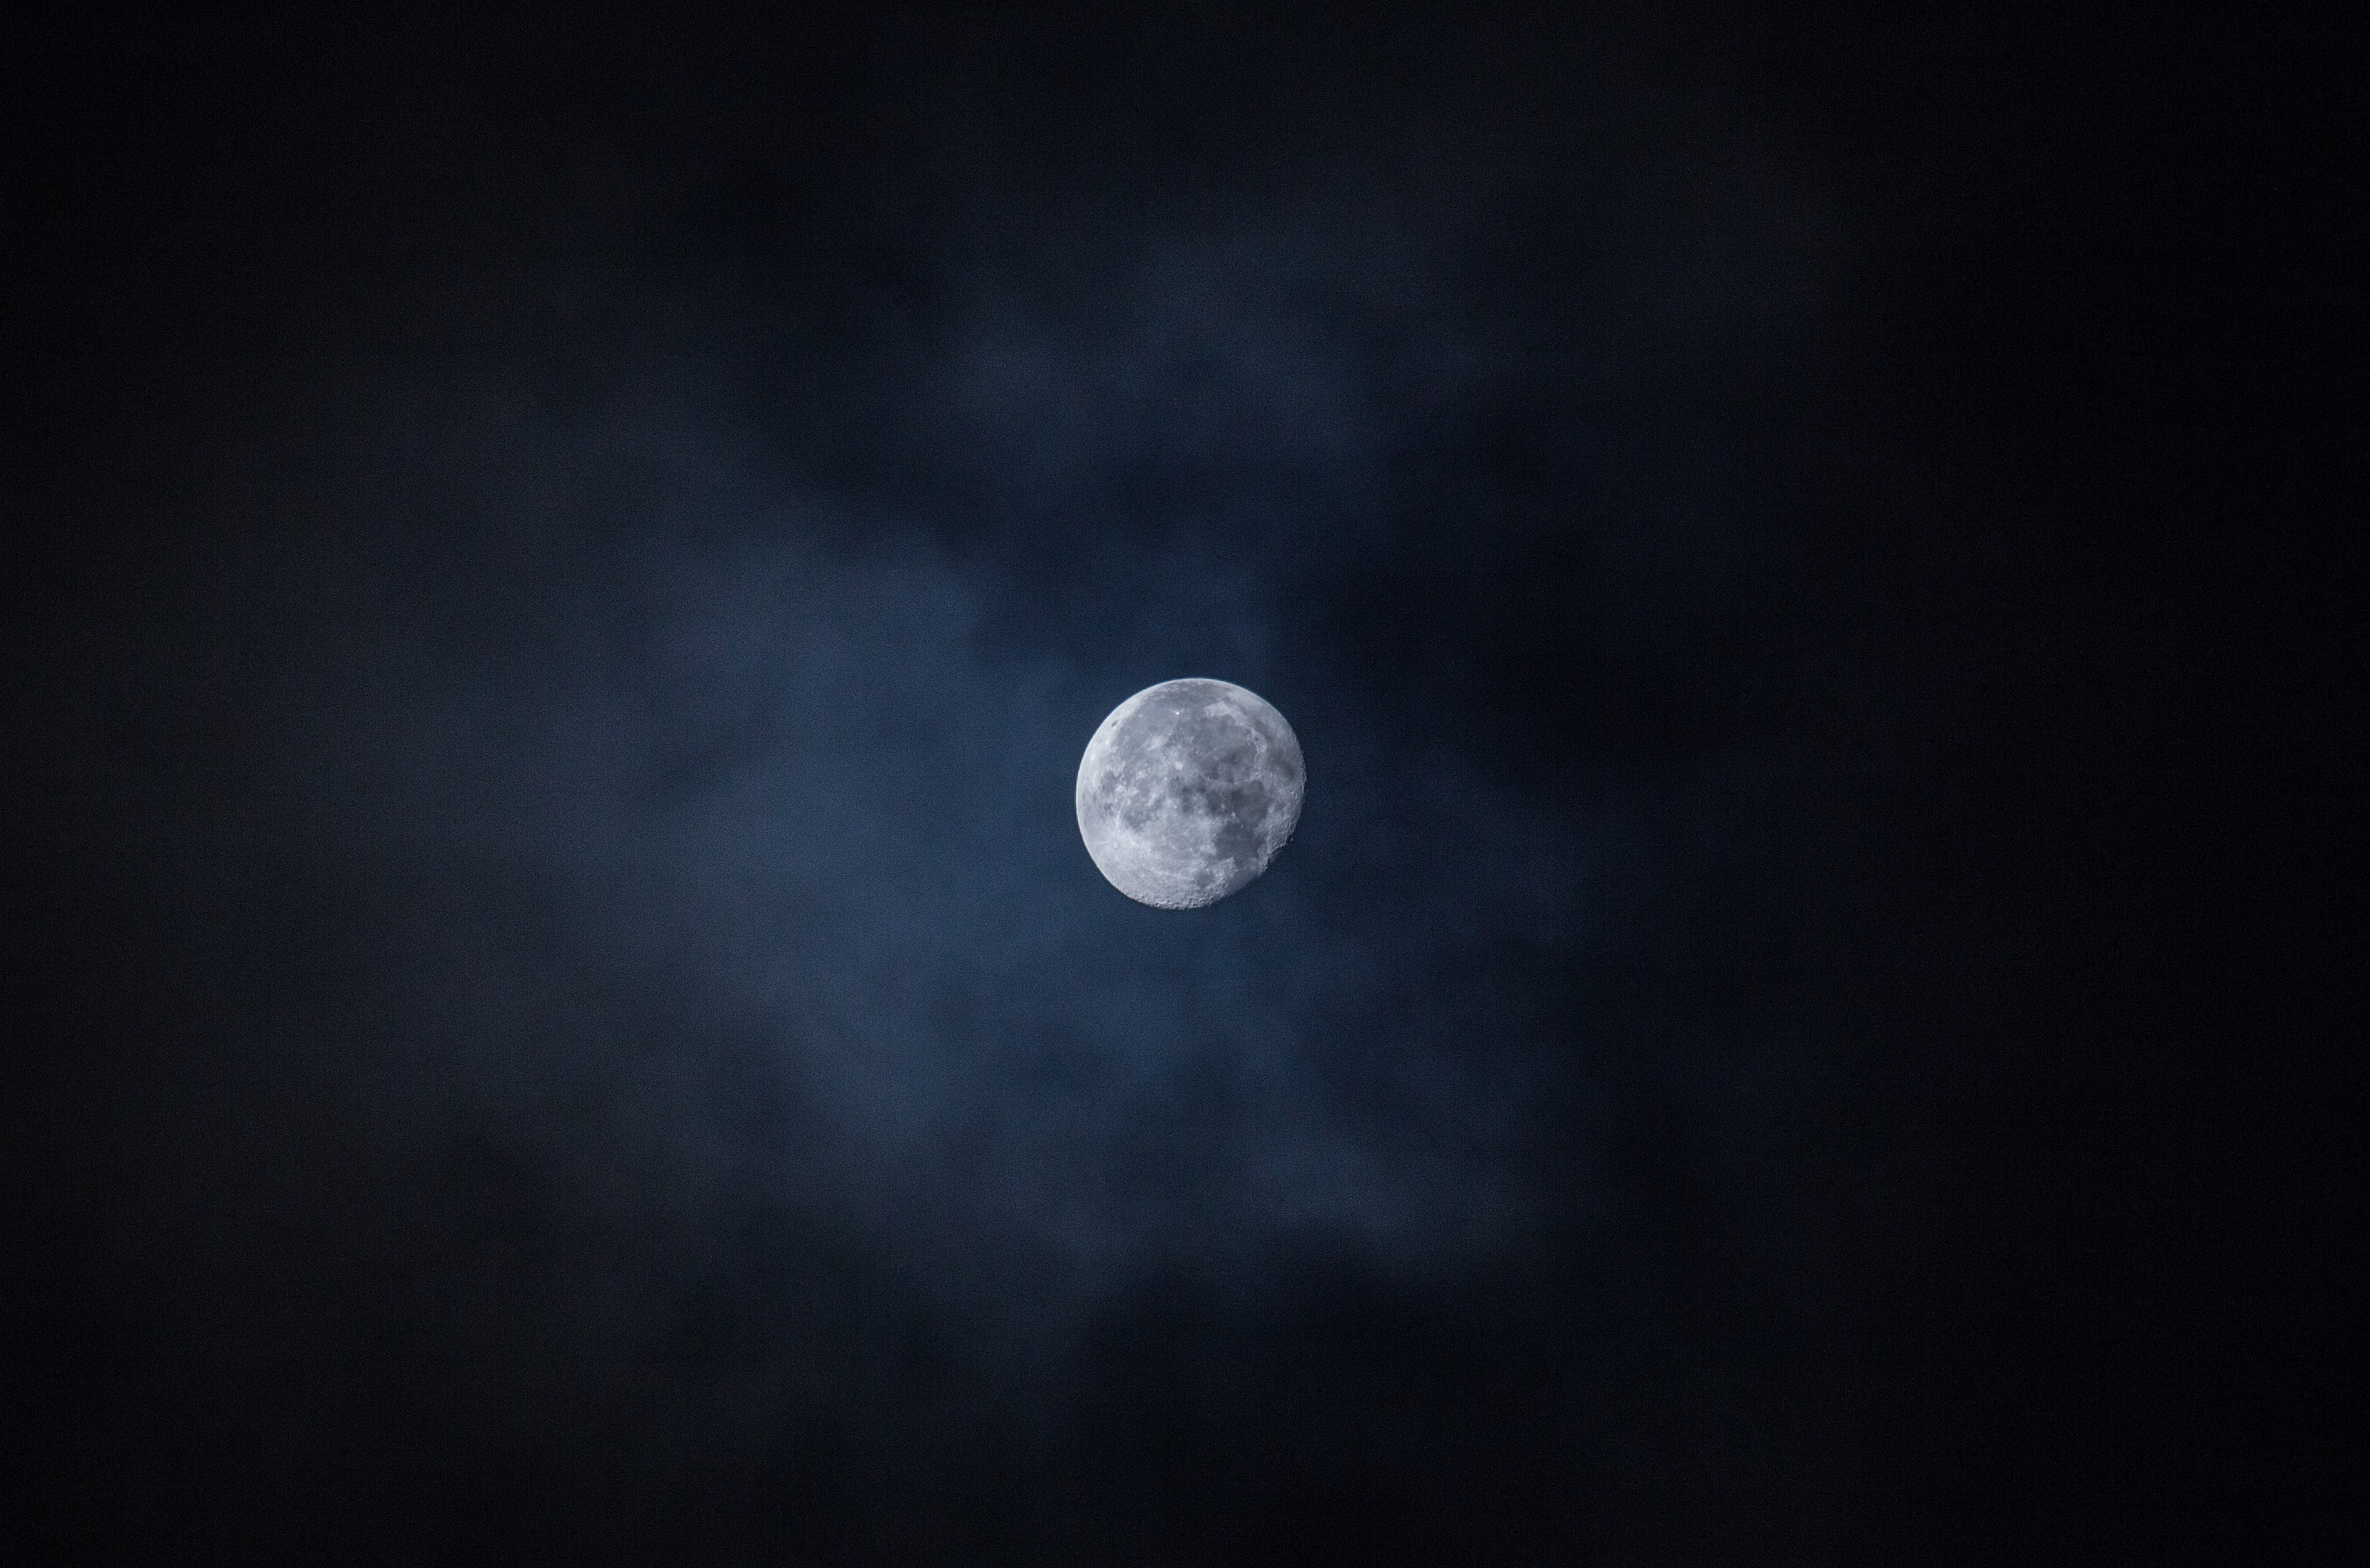 Скачать обои бесплатно Луна, Небо, Ночь, Космос картинка на рабочий стол ПК